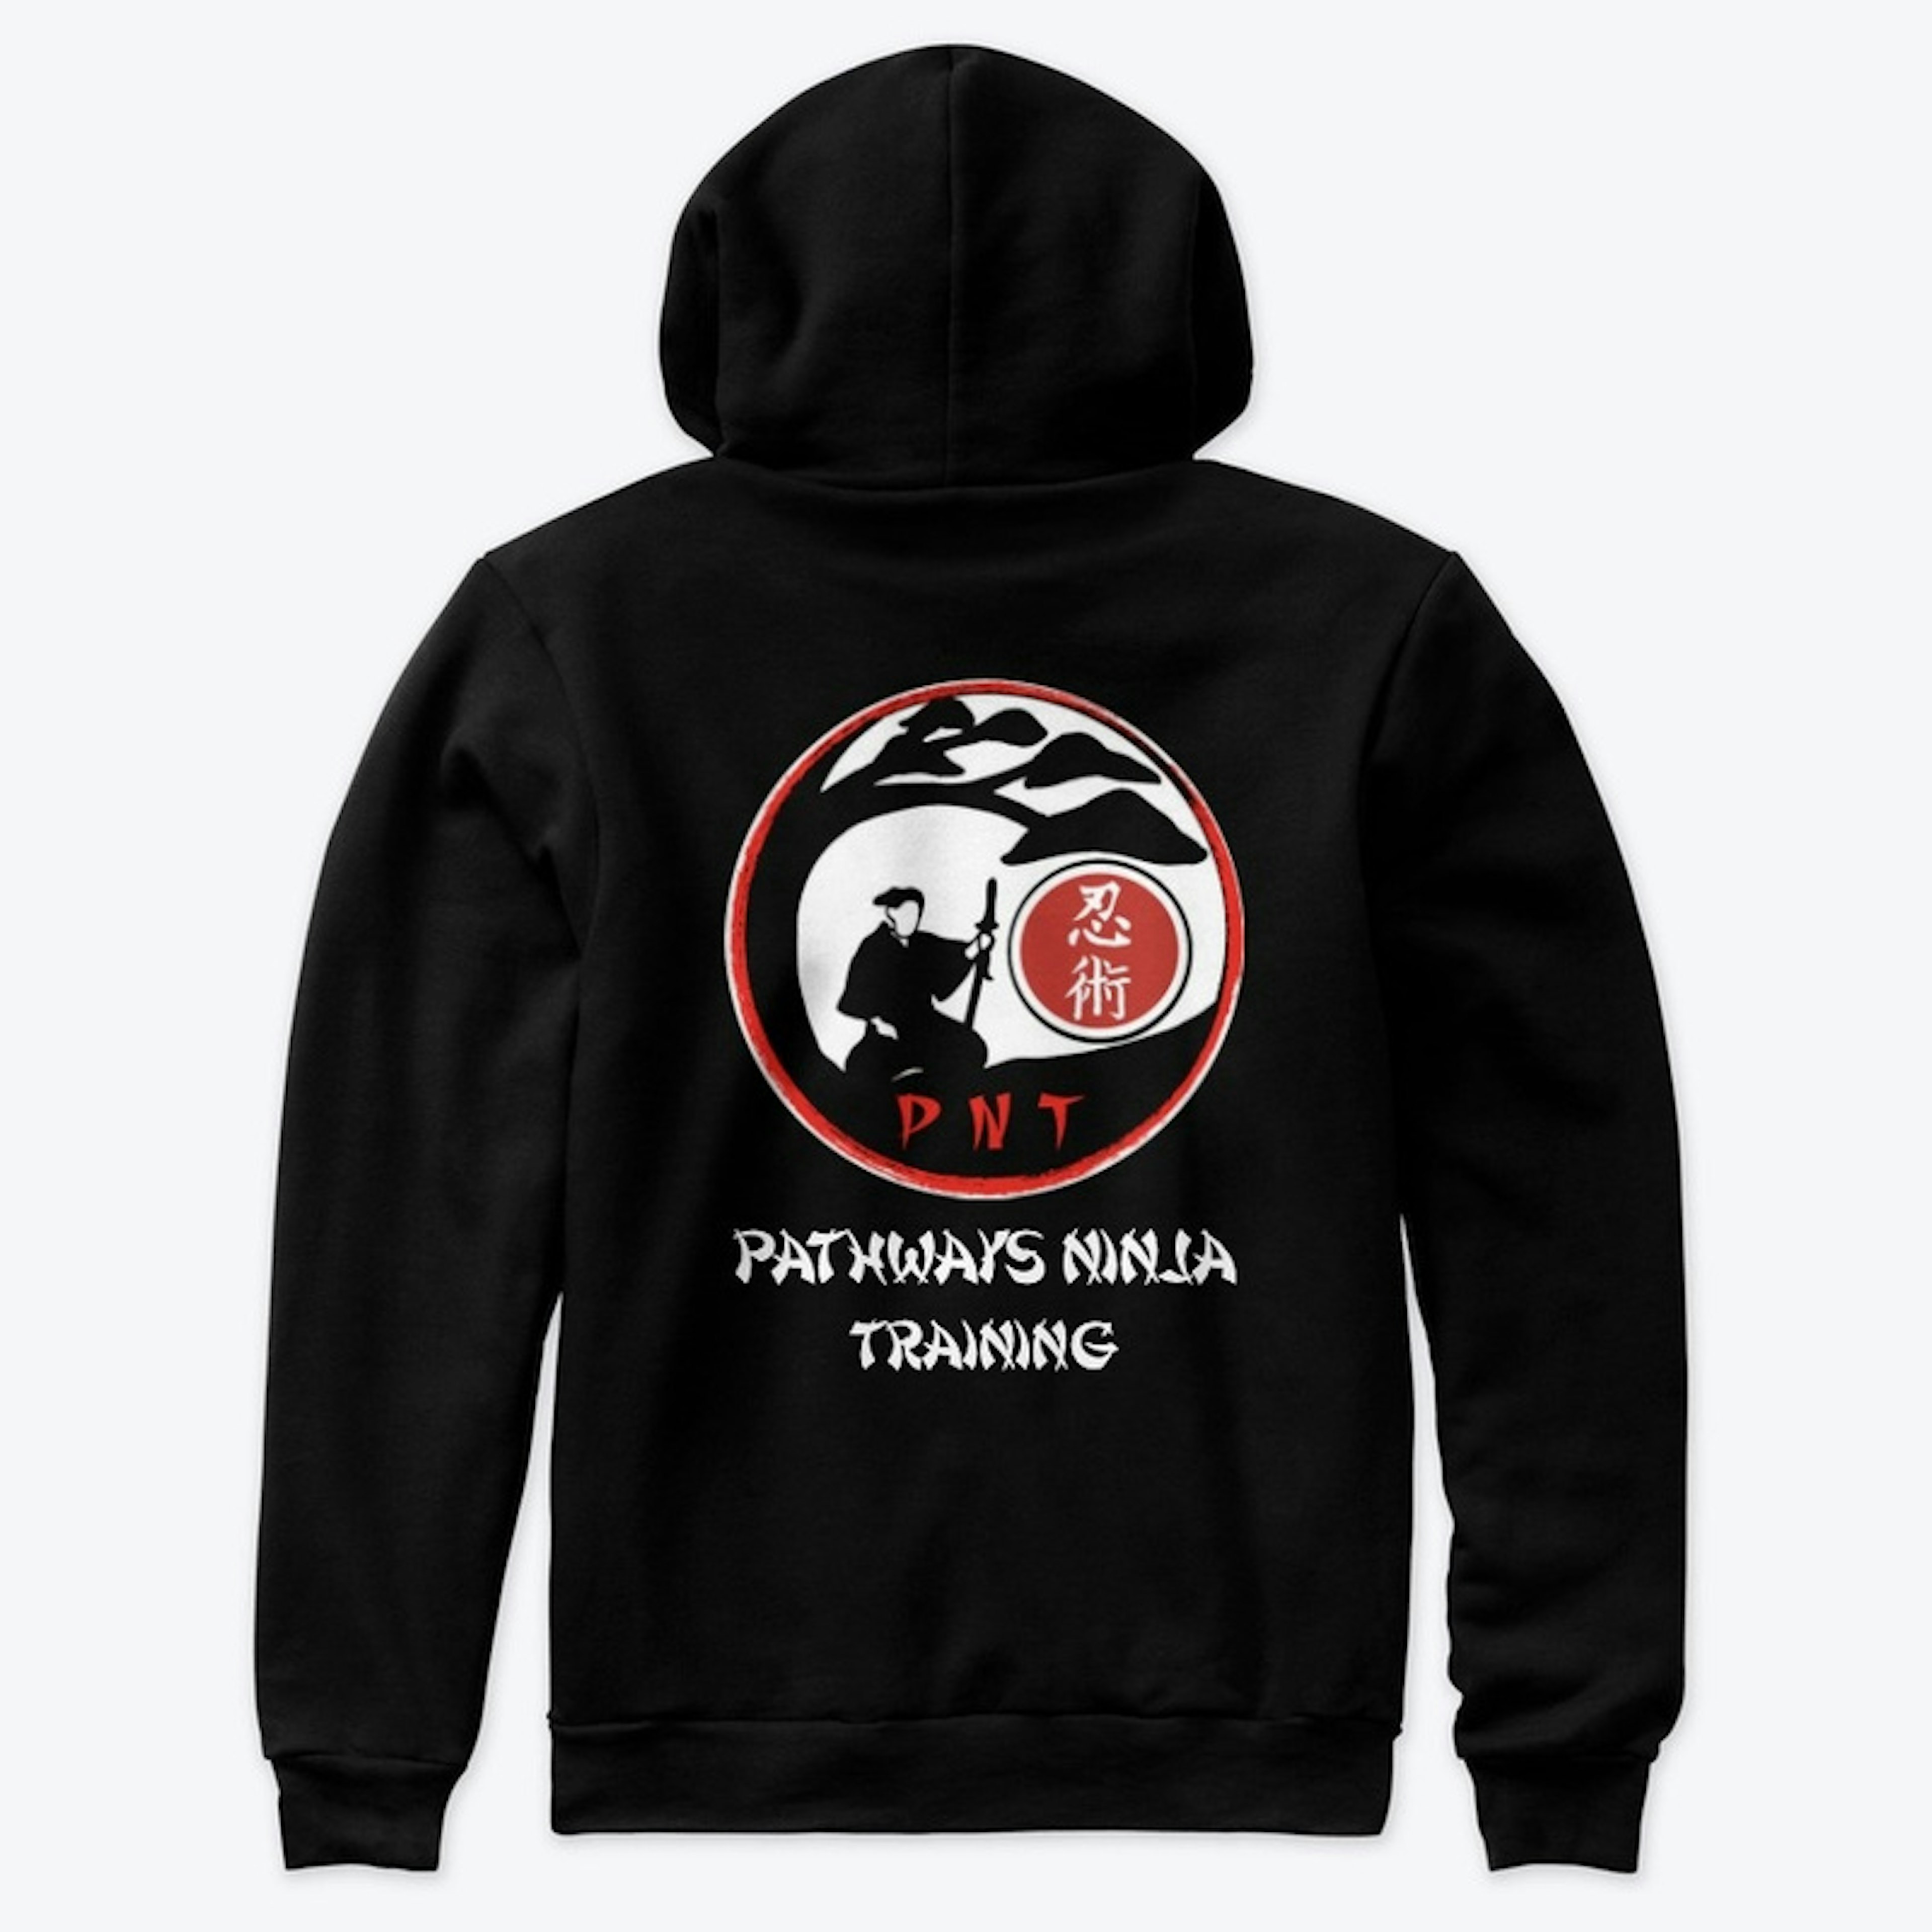 Pathways Ninja Training Shirts